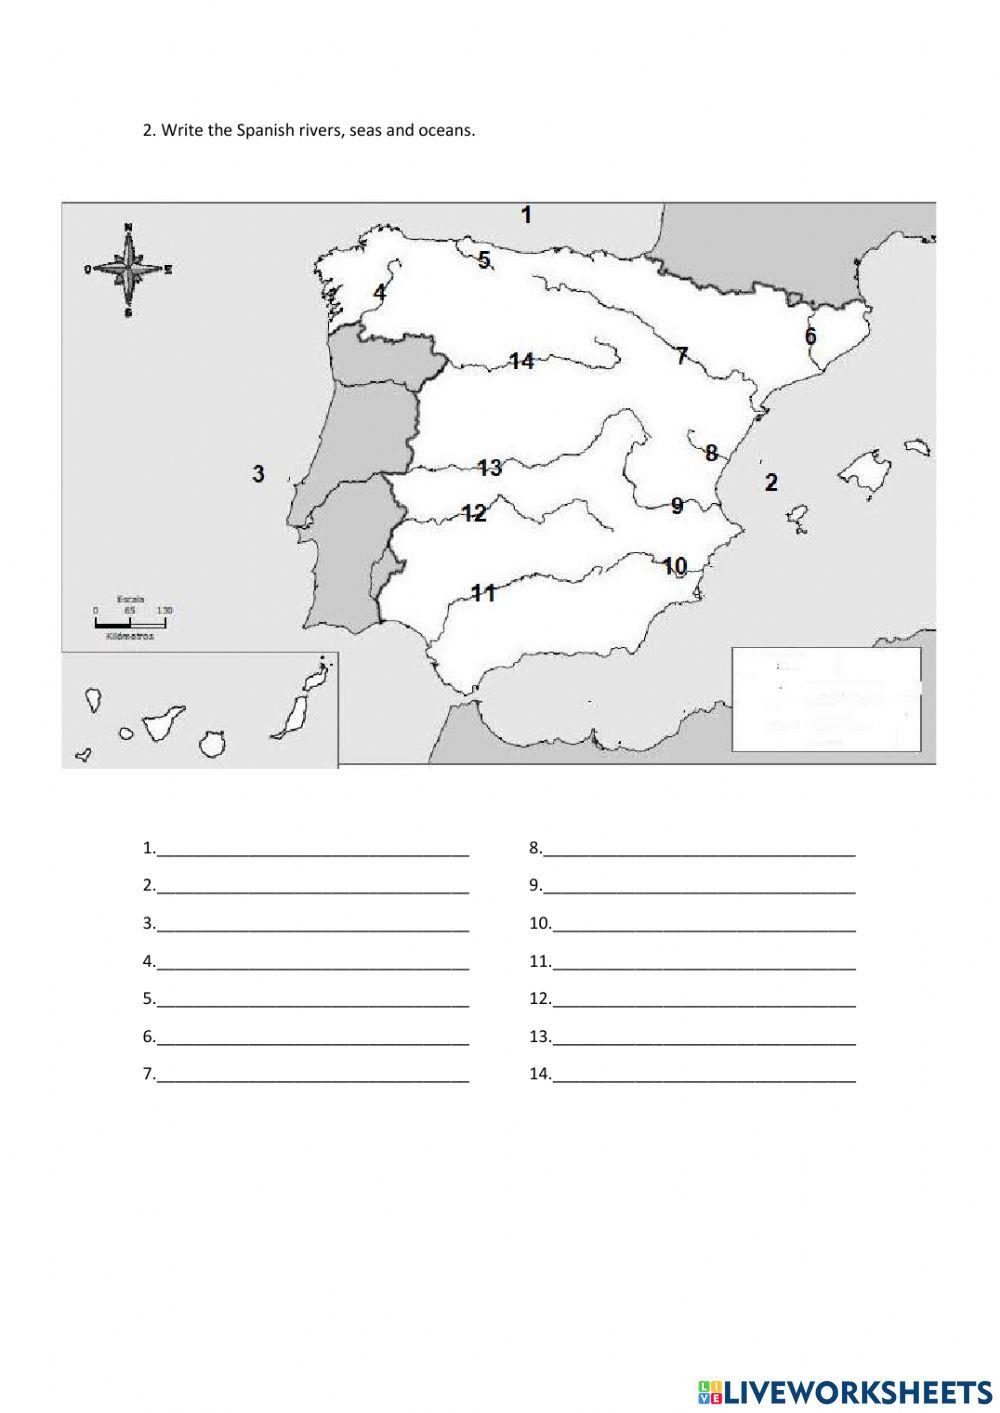 Ríos y montañas de España